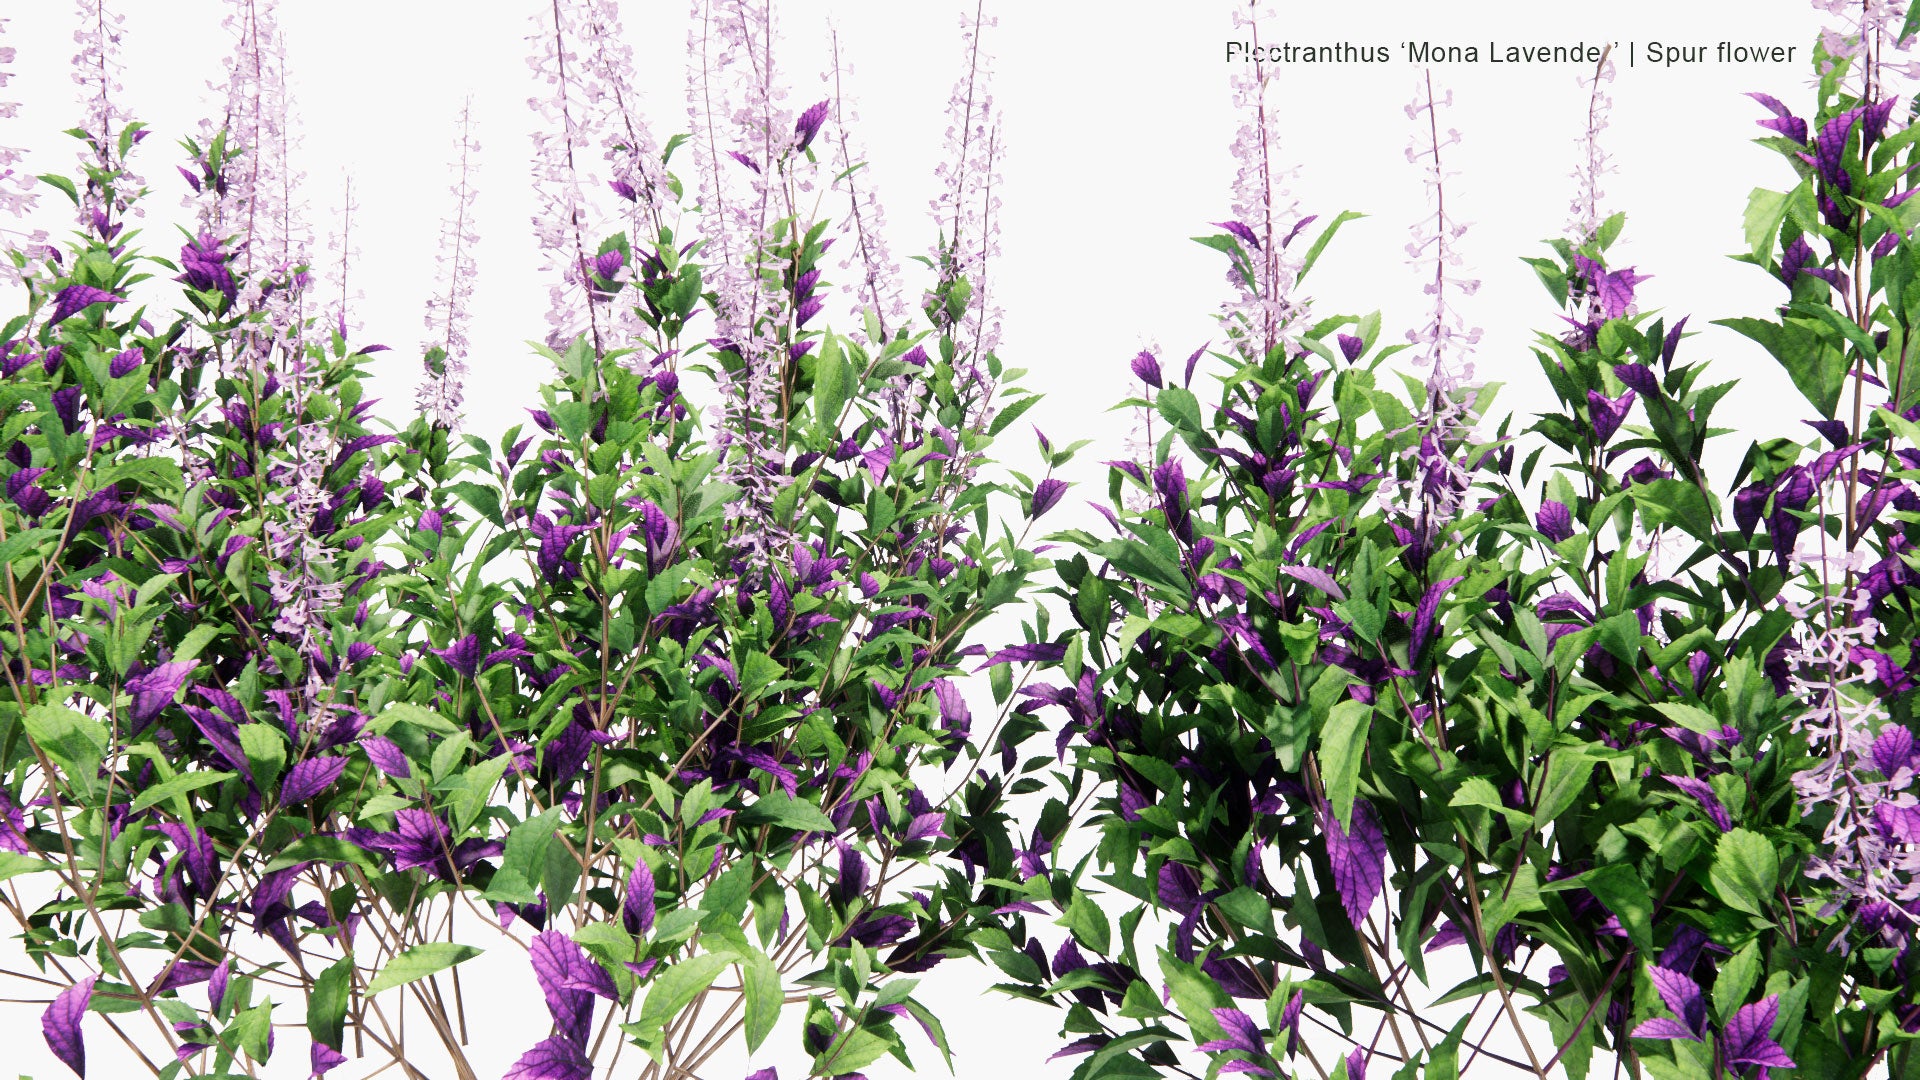 Low Poly Plectranthus 'Mona Lavender' - Spur Flower (3D Model)